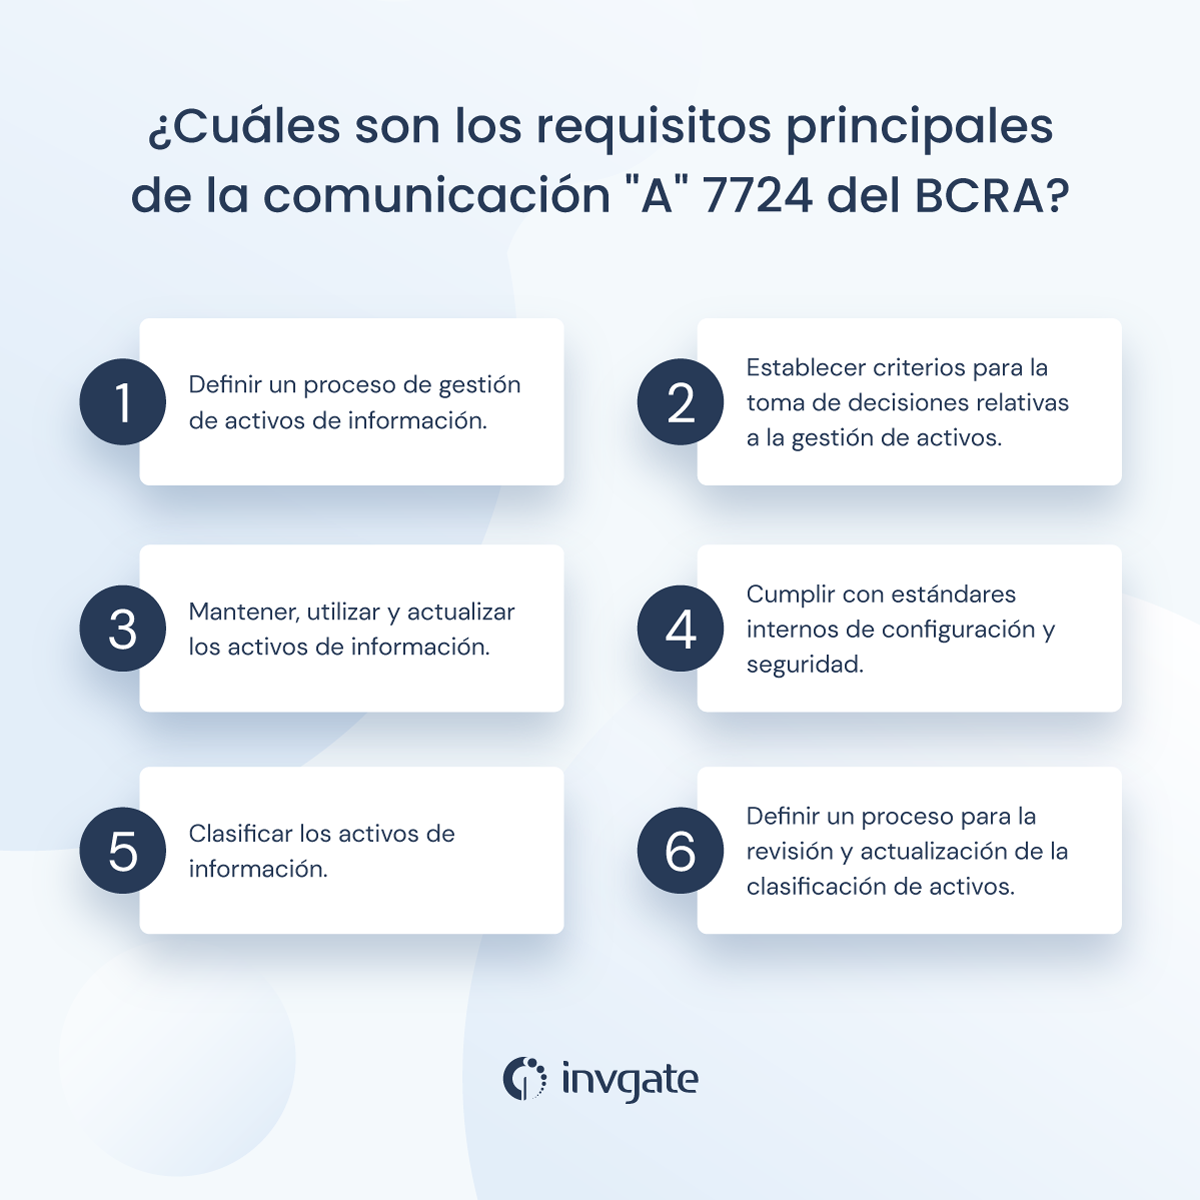 ¿Cuáles son los requisitos principales de la Comunicación "A" 7724 del BCRA?